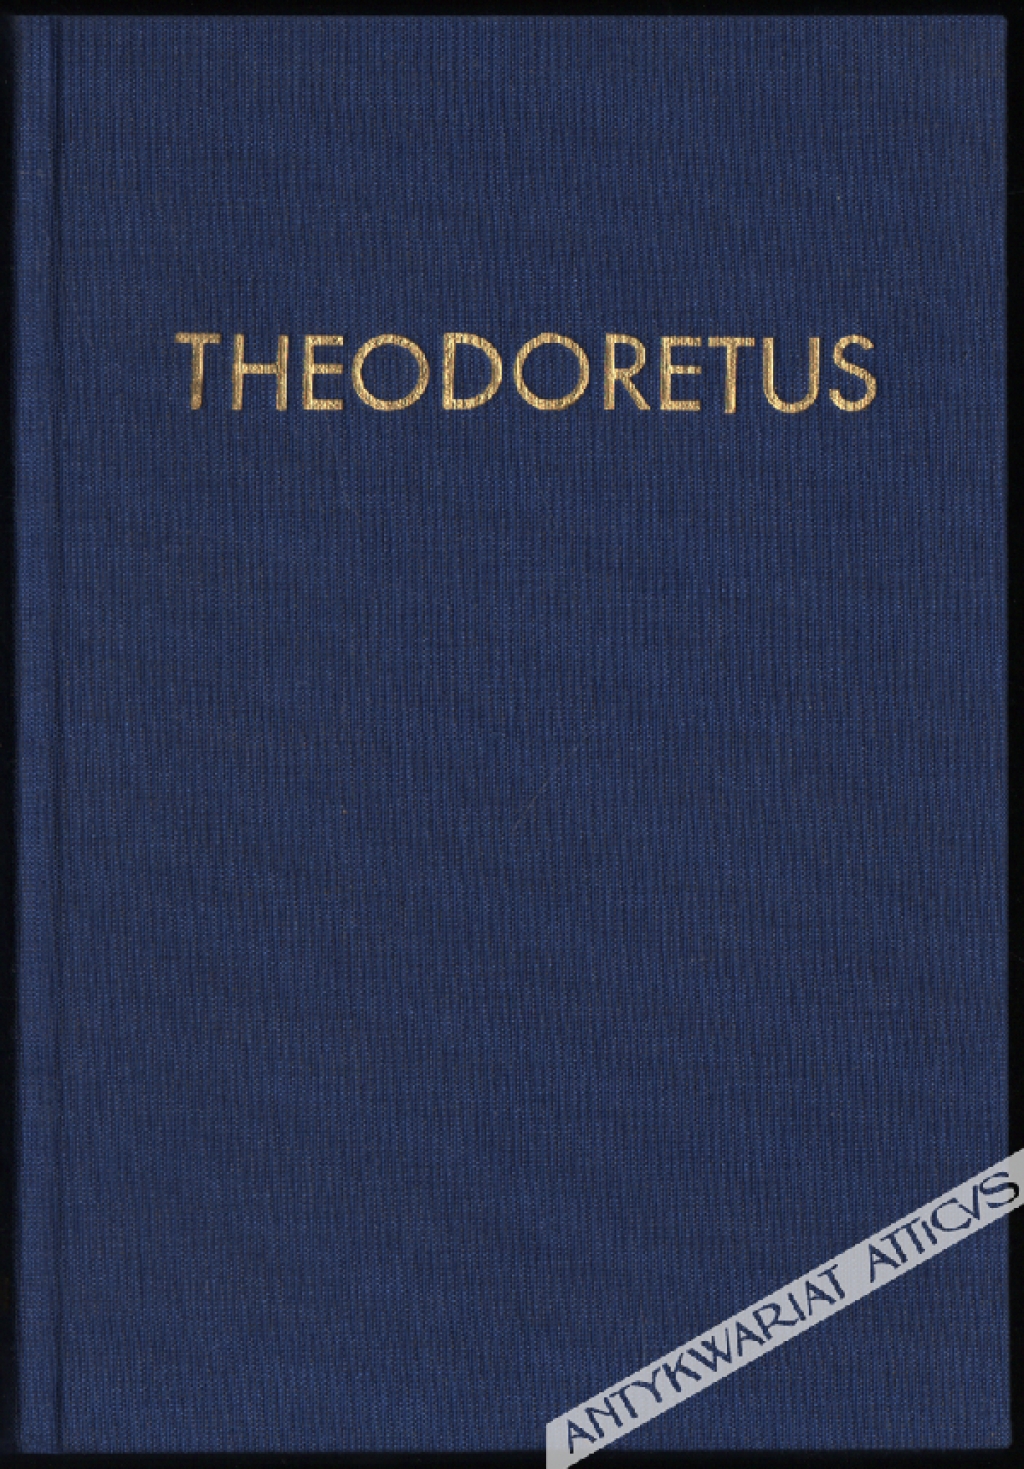 [Theodoretus] [reprint]